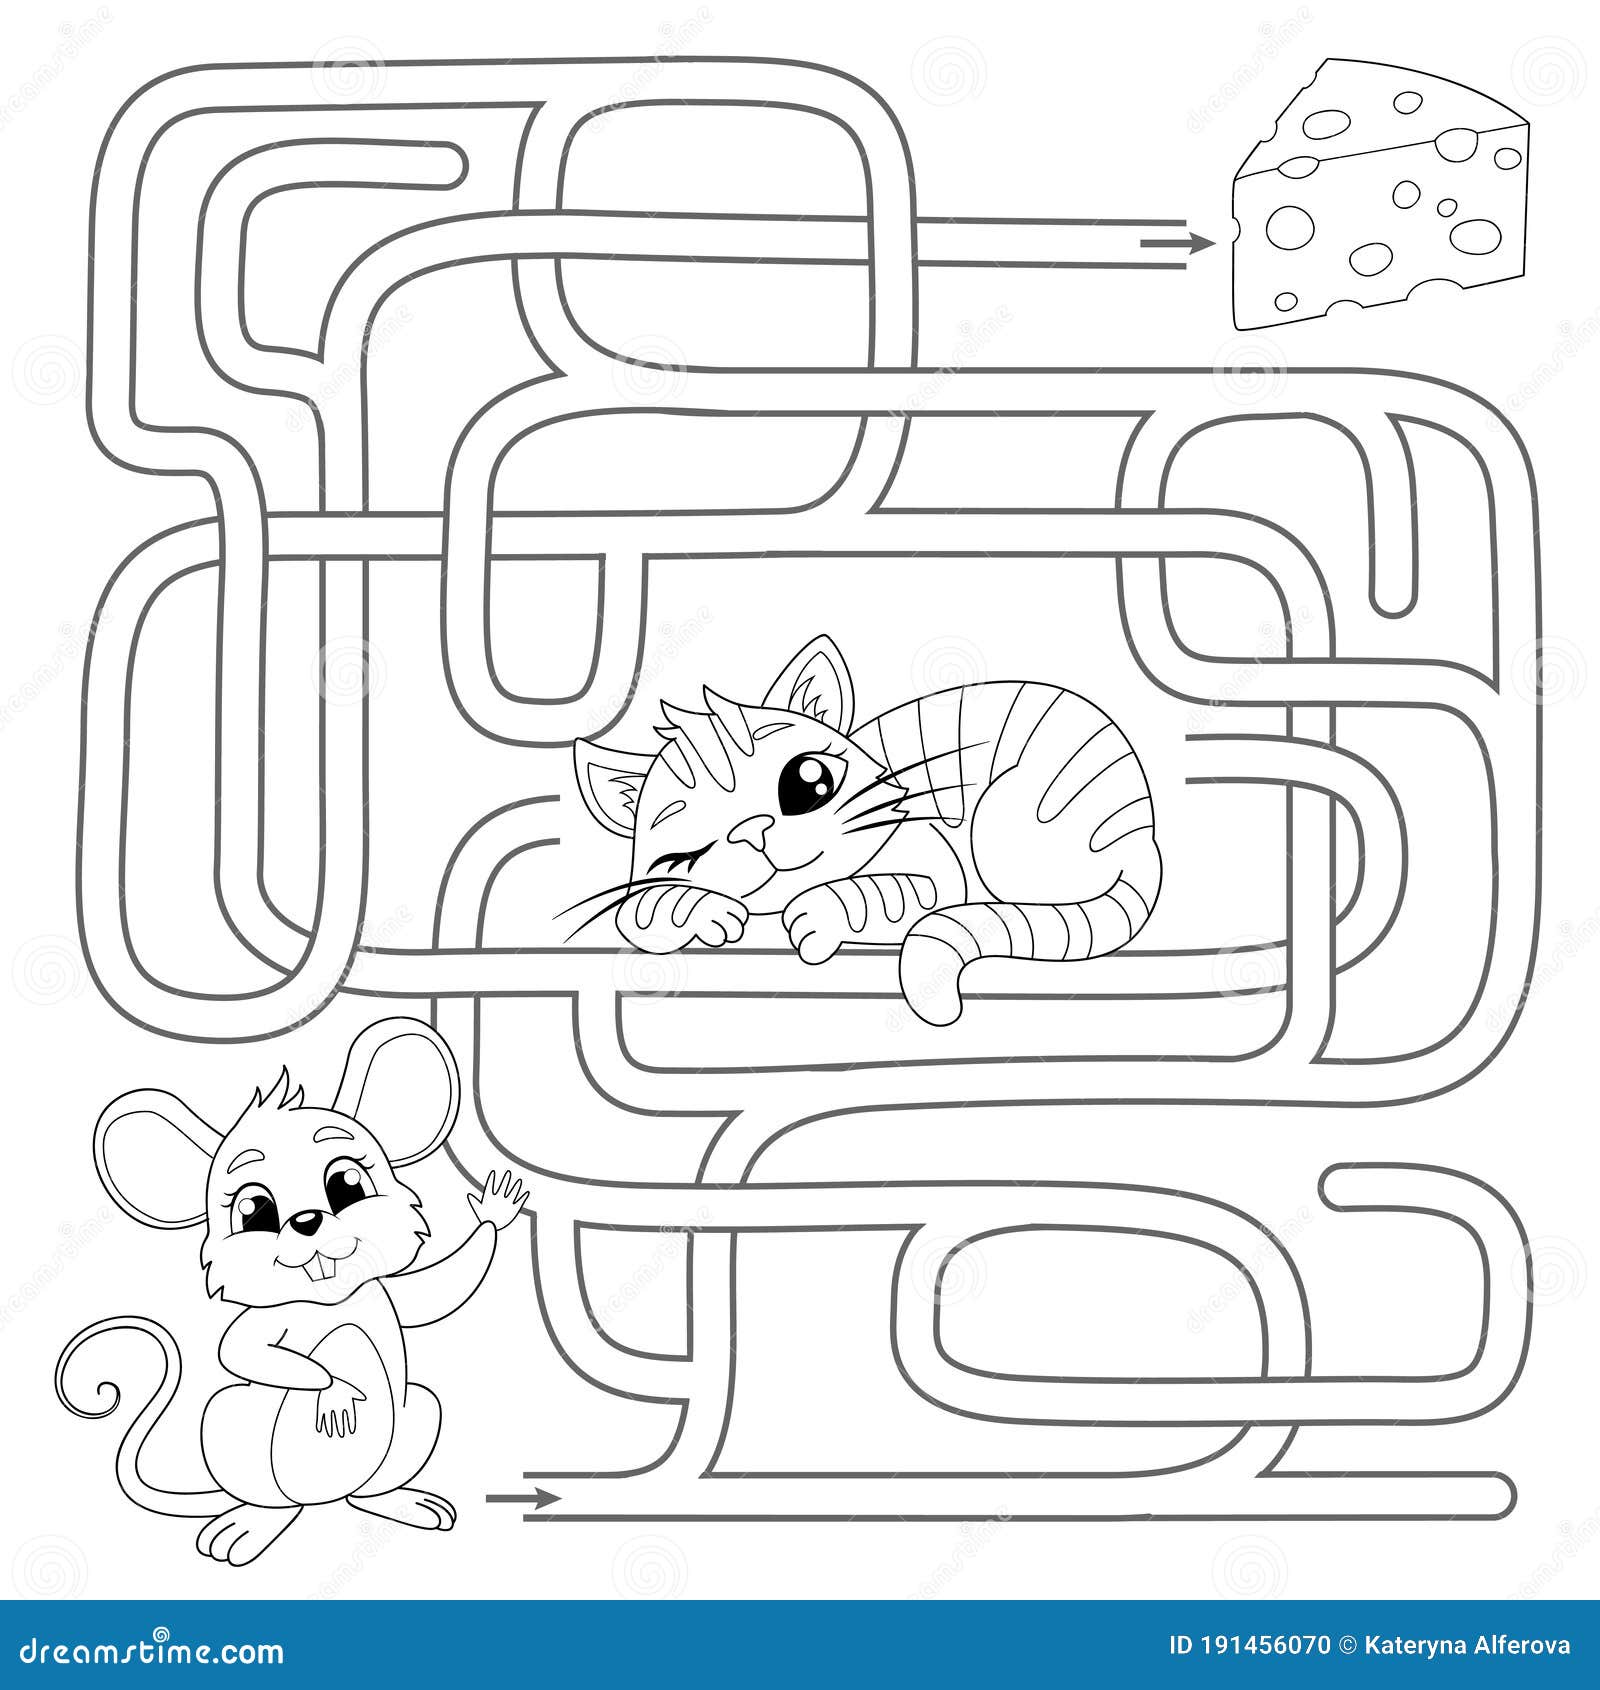 Encontre o caminho do jogo de labirinto com gatos ou gatinhos de desenho  animado